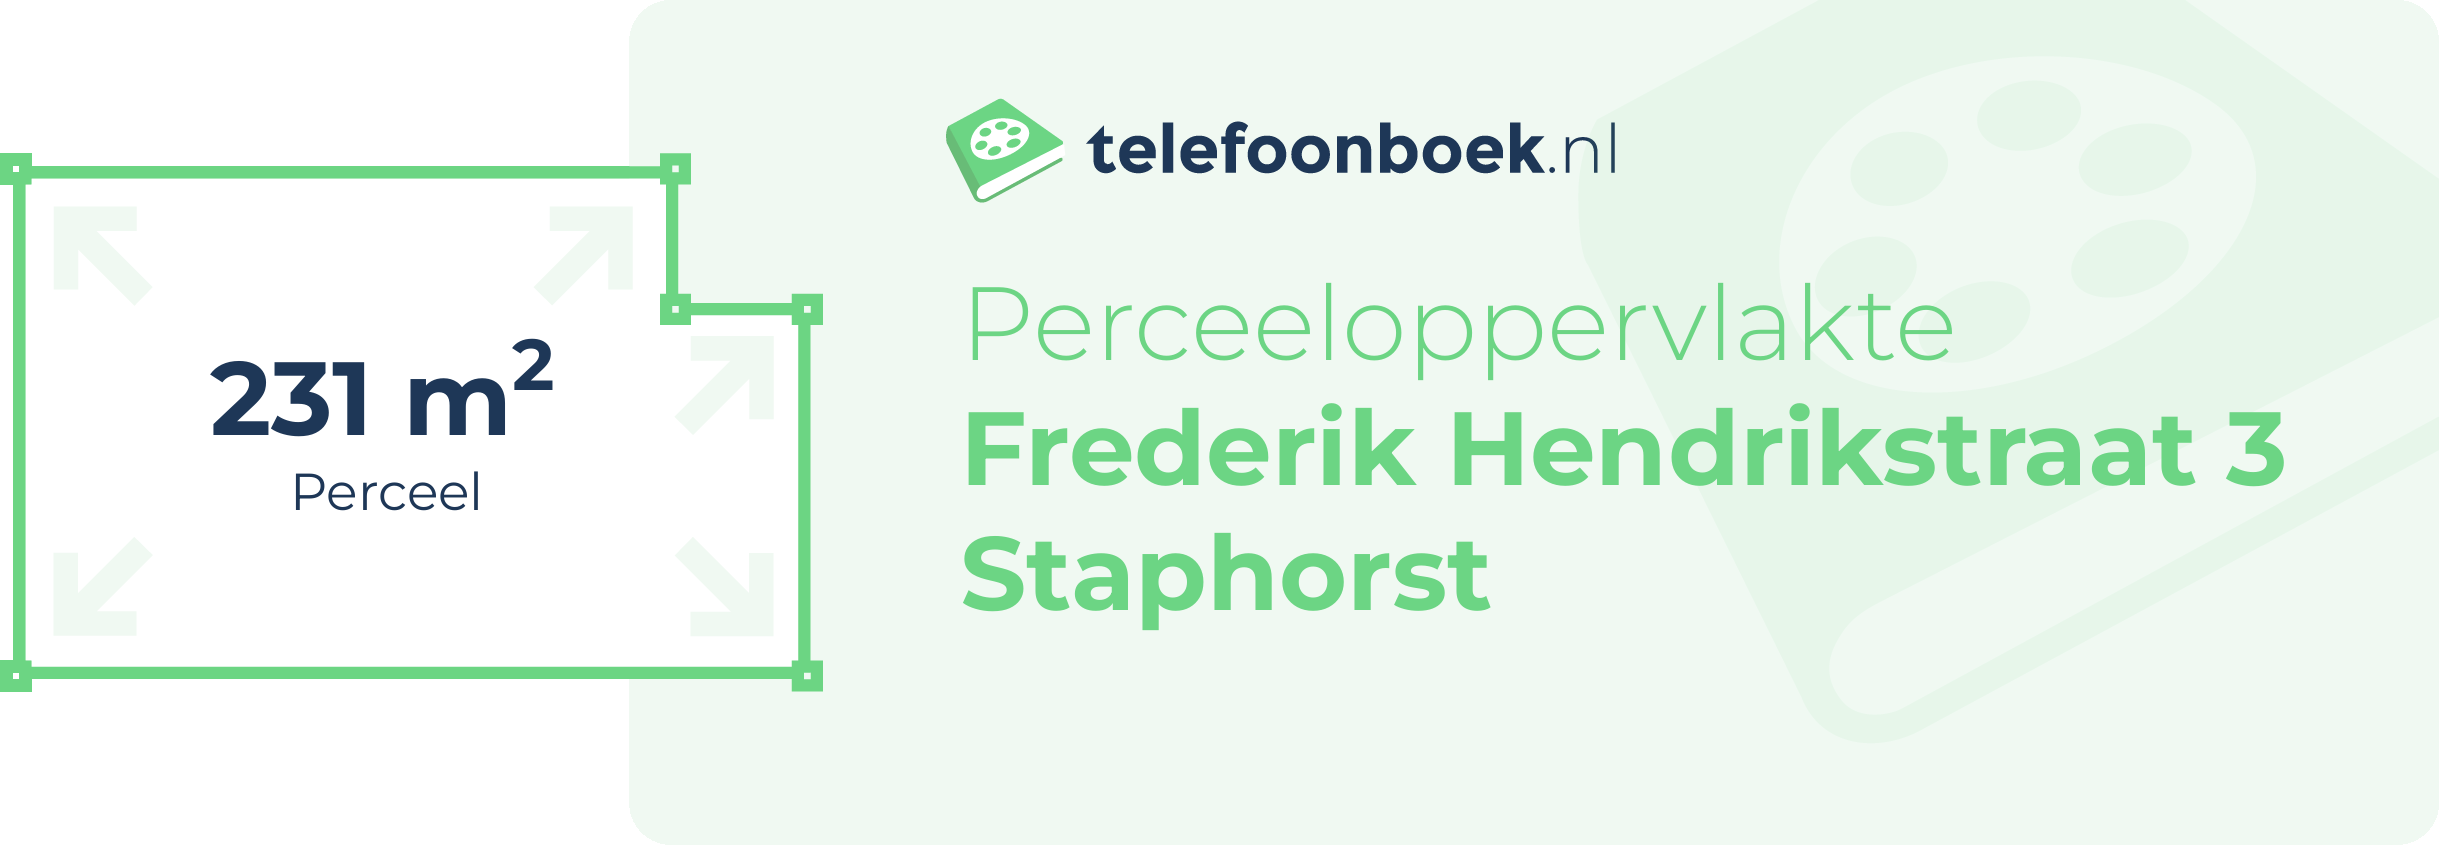 Perceeloppervlakte Frederik Hendrikstraat 3 Staphorst